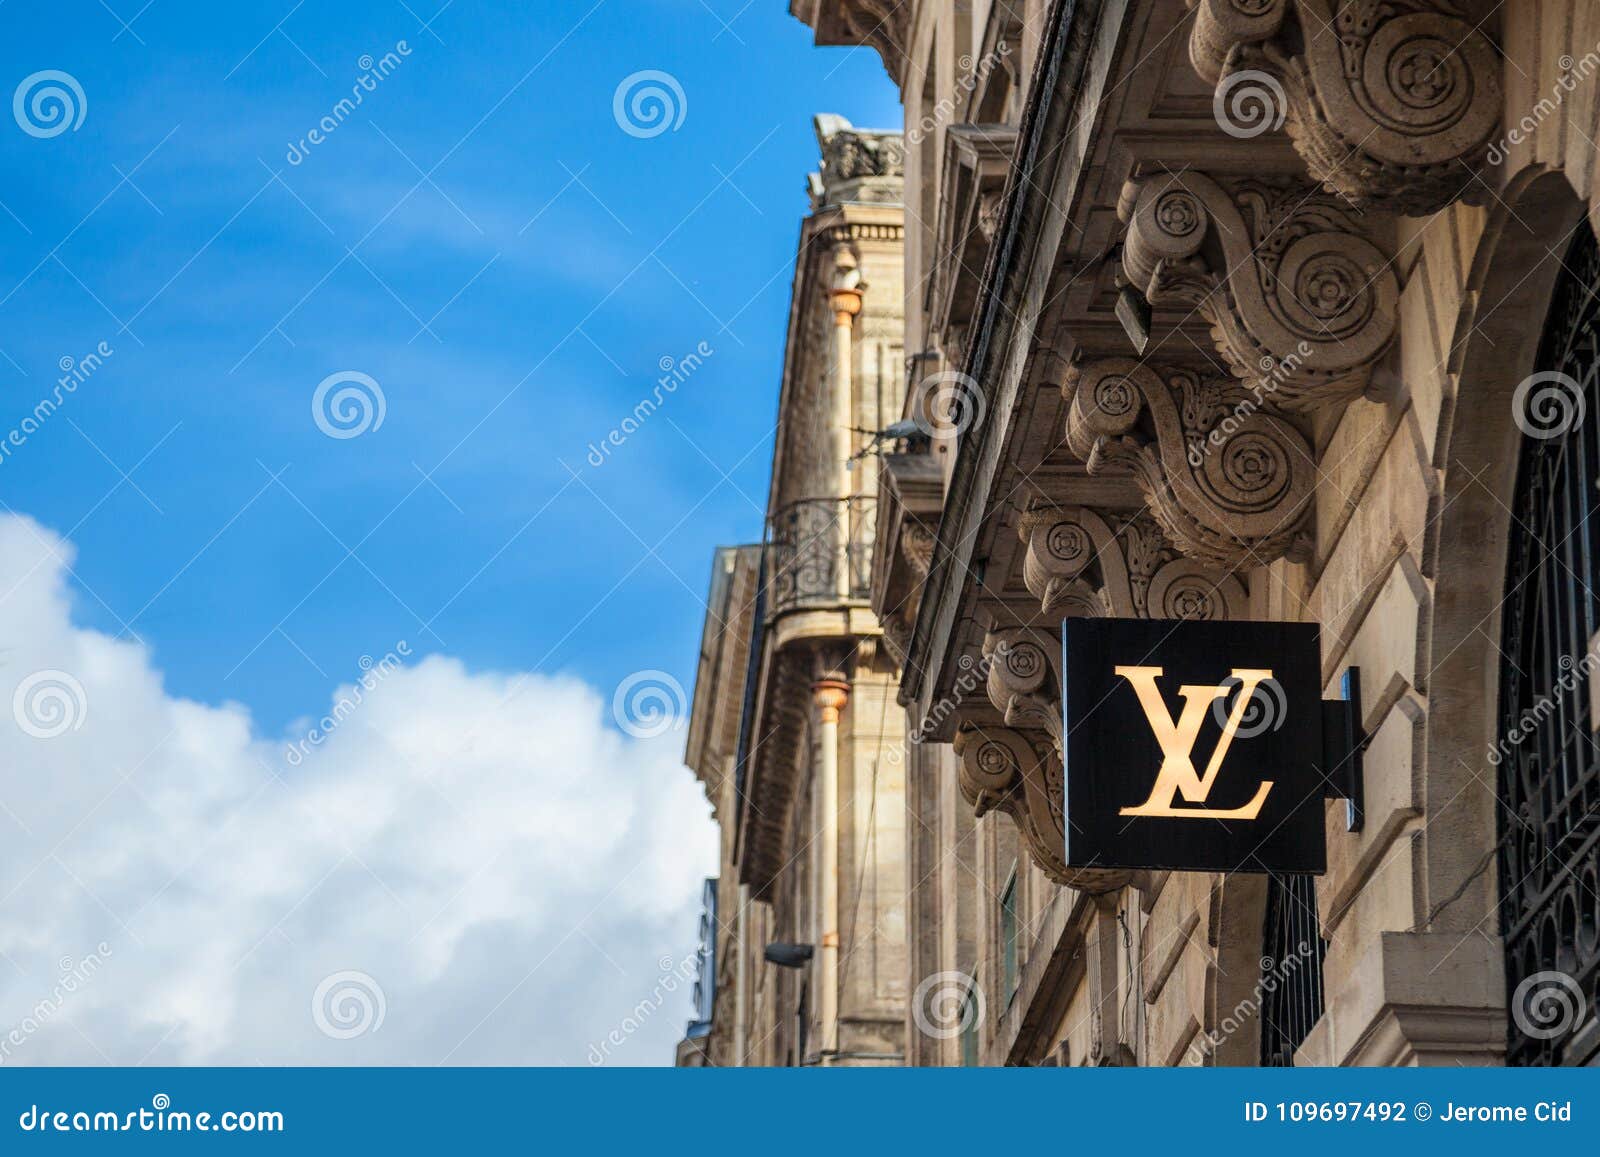 Louis Vuitton Logo On Their Local Shop In Bordeaux. Louis Vuitton Is A Fashion House ...